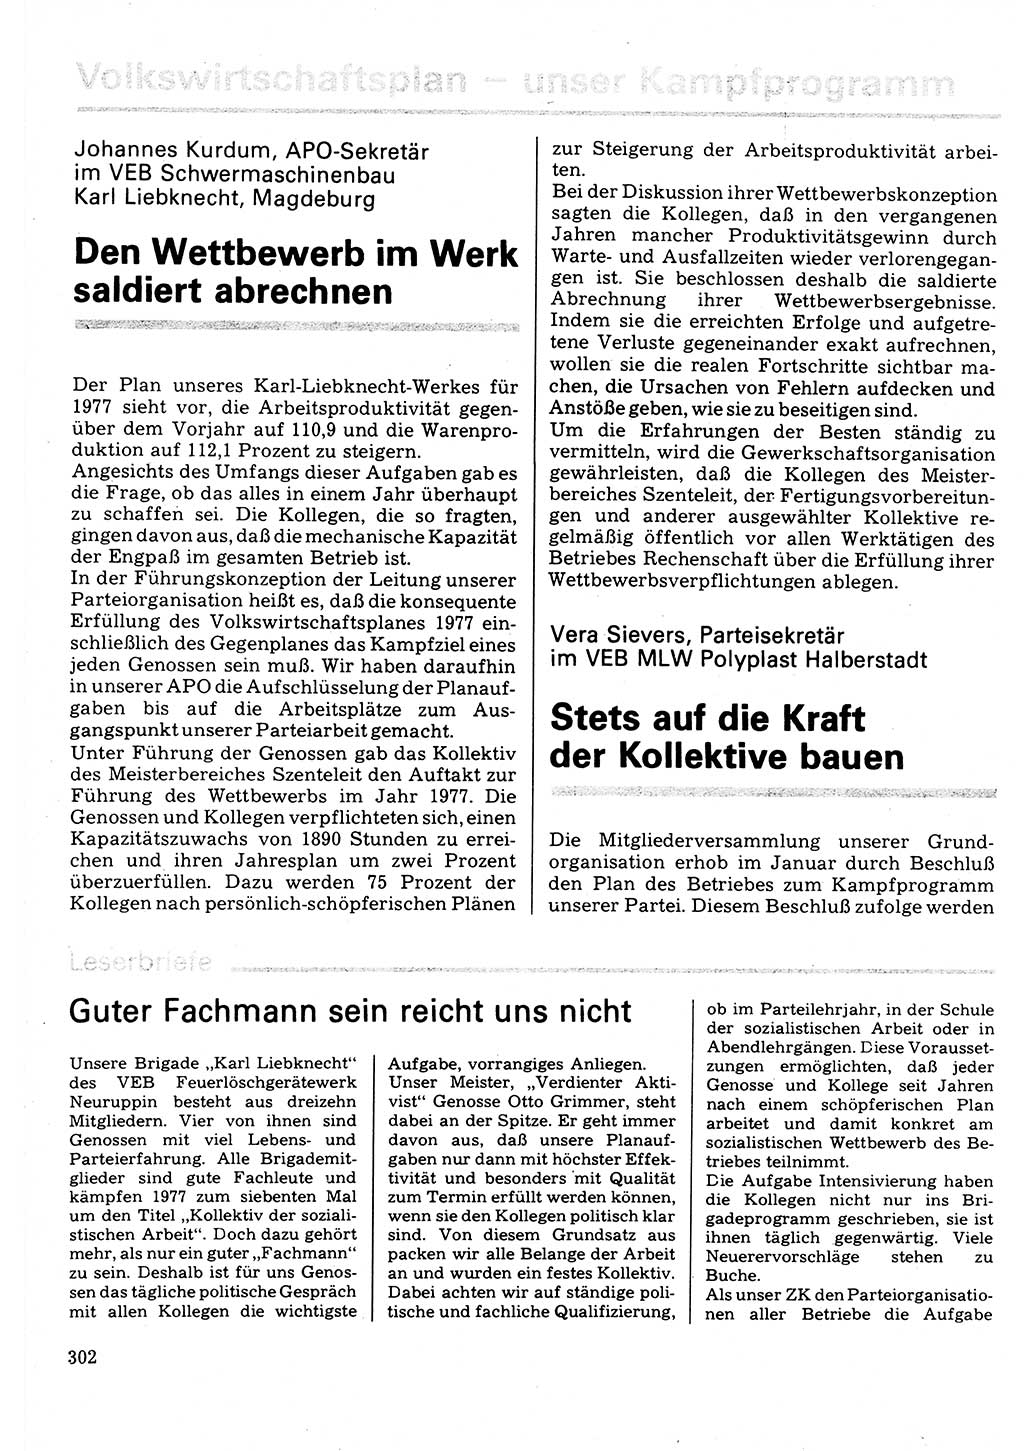 Neuer Weg (NW), Organ des Zentralkomitees (ZK) der SED (Sozialistische Einheitspartei Deutschlands) für Fragen des Parteilebens, 32. Jahrgang [Deutsche Demokratische Republik (DDR)] 1977, Seite 302 (NW ZK SED DDR 1977, S. 302)